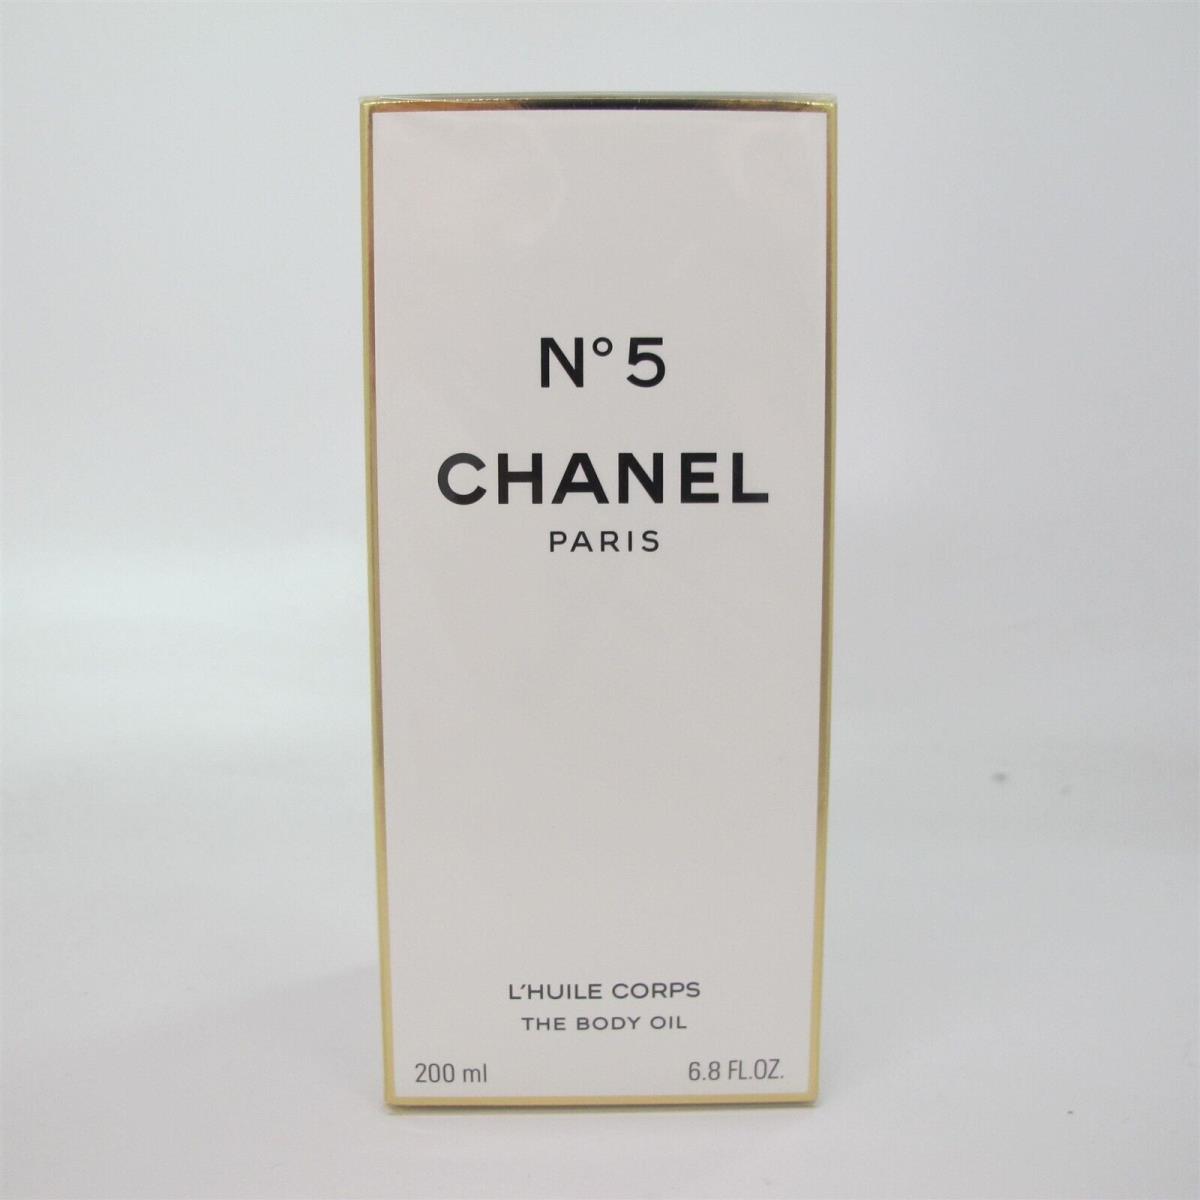 Chanel No. 5 by Chanel 200 Ml/ 6.8 oz The Body Oil Rare